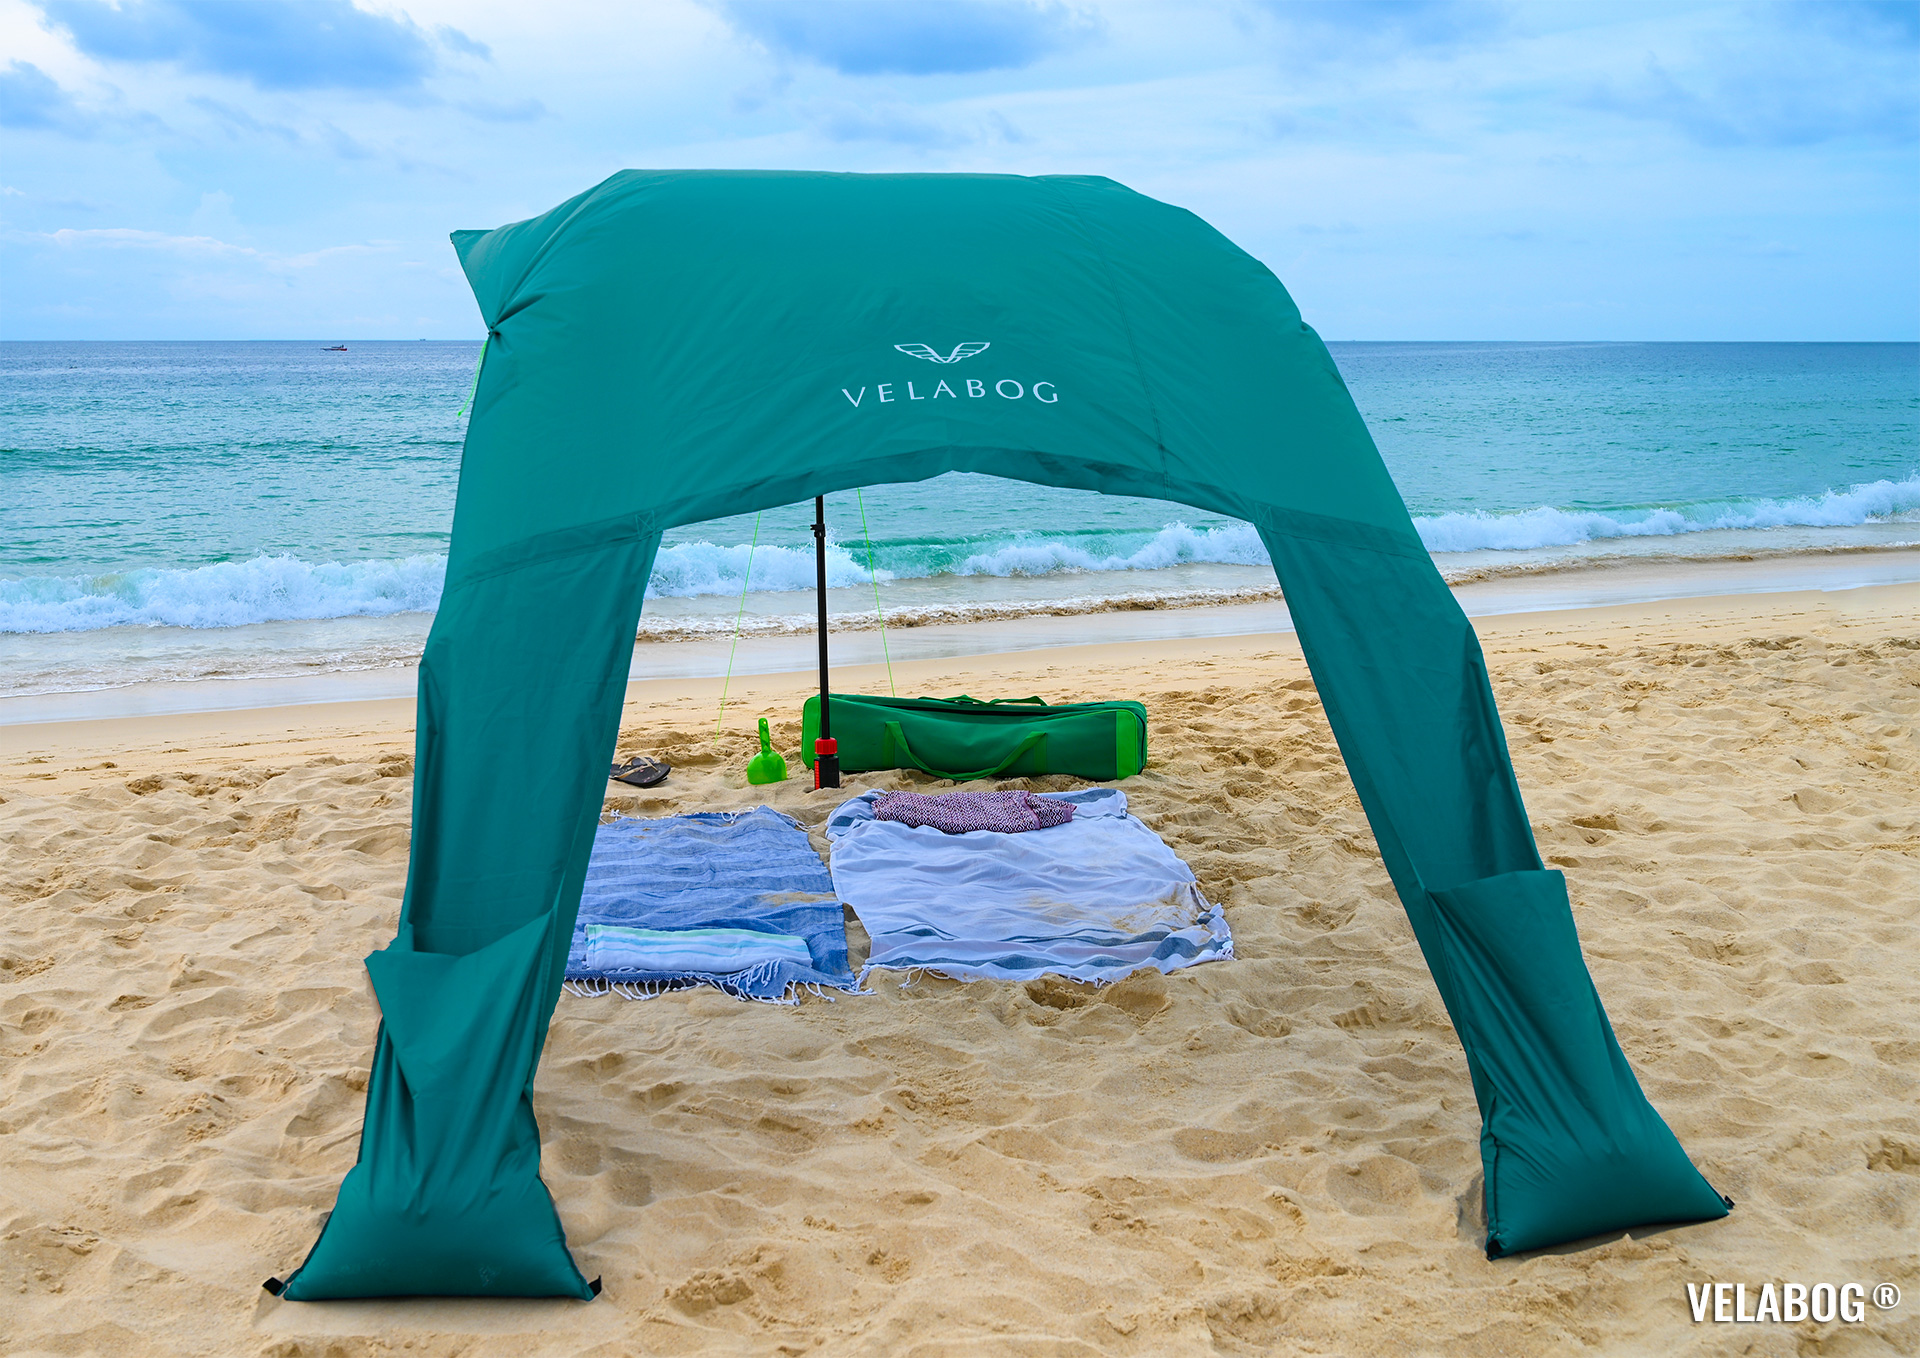 Strand Sonnensegel Strandzelt Velabog Breeze, grün, am Strand in Thailand. Bester Sonnenschutz Strand, gross und luftig. Beste Alternative zu Strandschirmen, Strandzelten und Strandmuscheln. Test Strand Sonnensegel Aufbauoption beim leichten bis starken Wind. Ansicht von hinten.